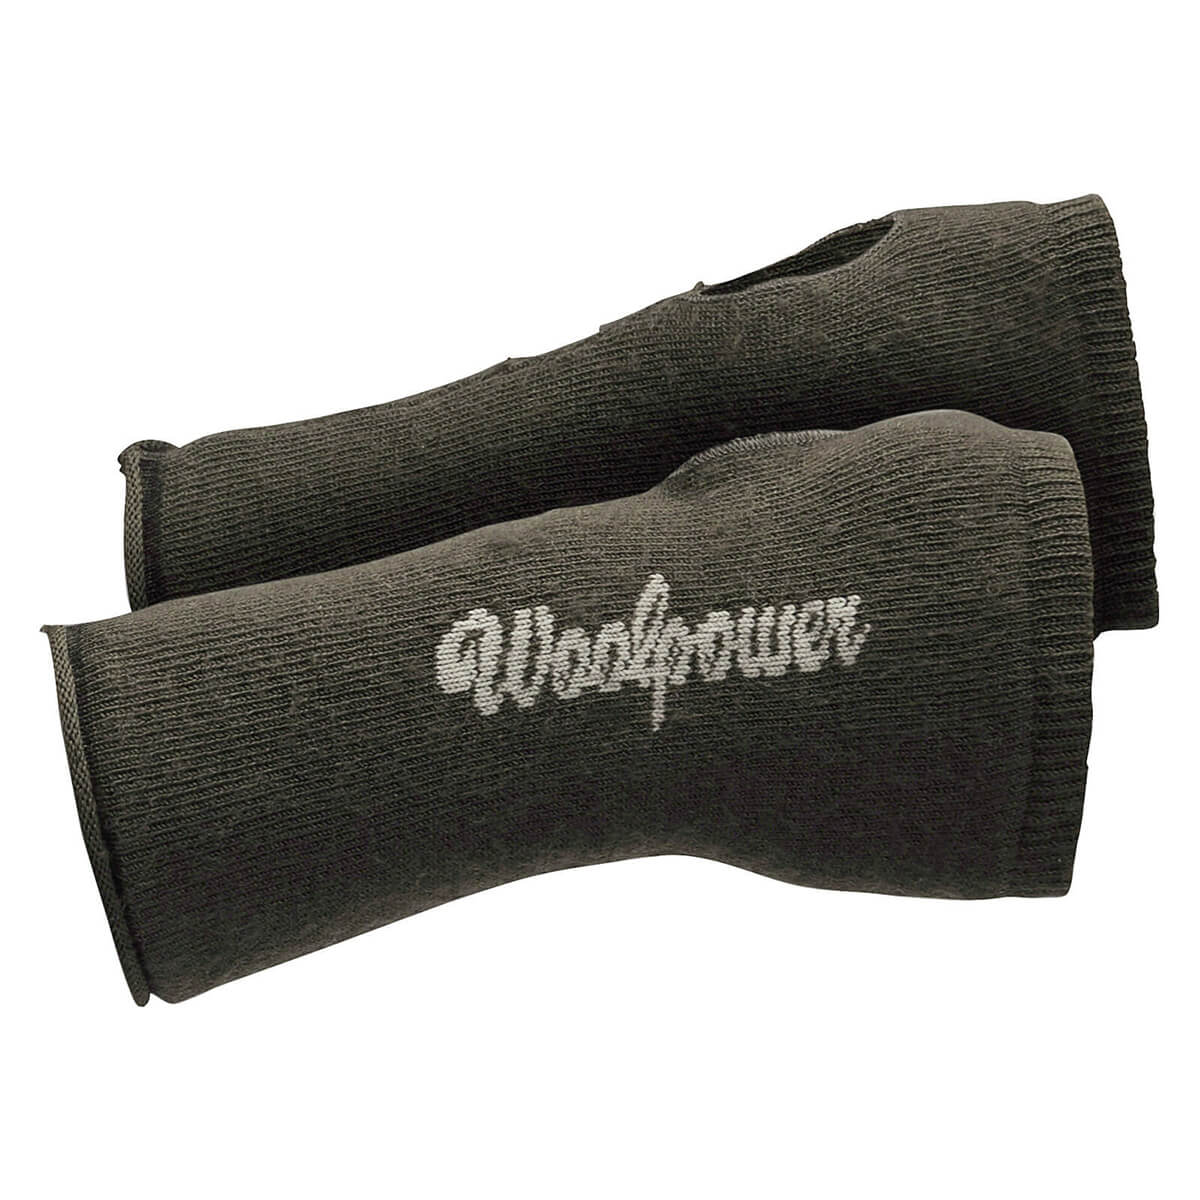 Woolpower Gaiter 200 - Hunting Gloves